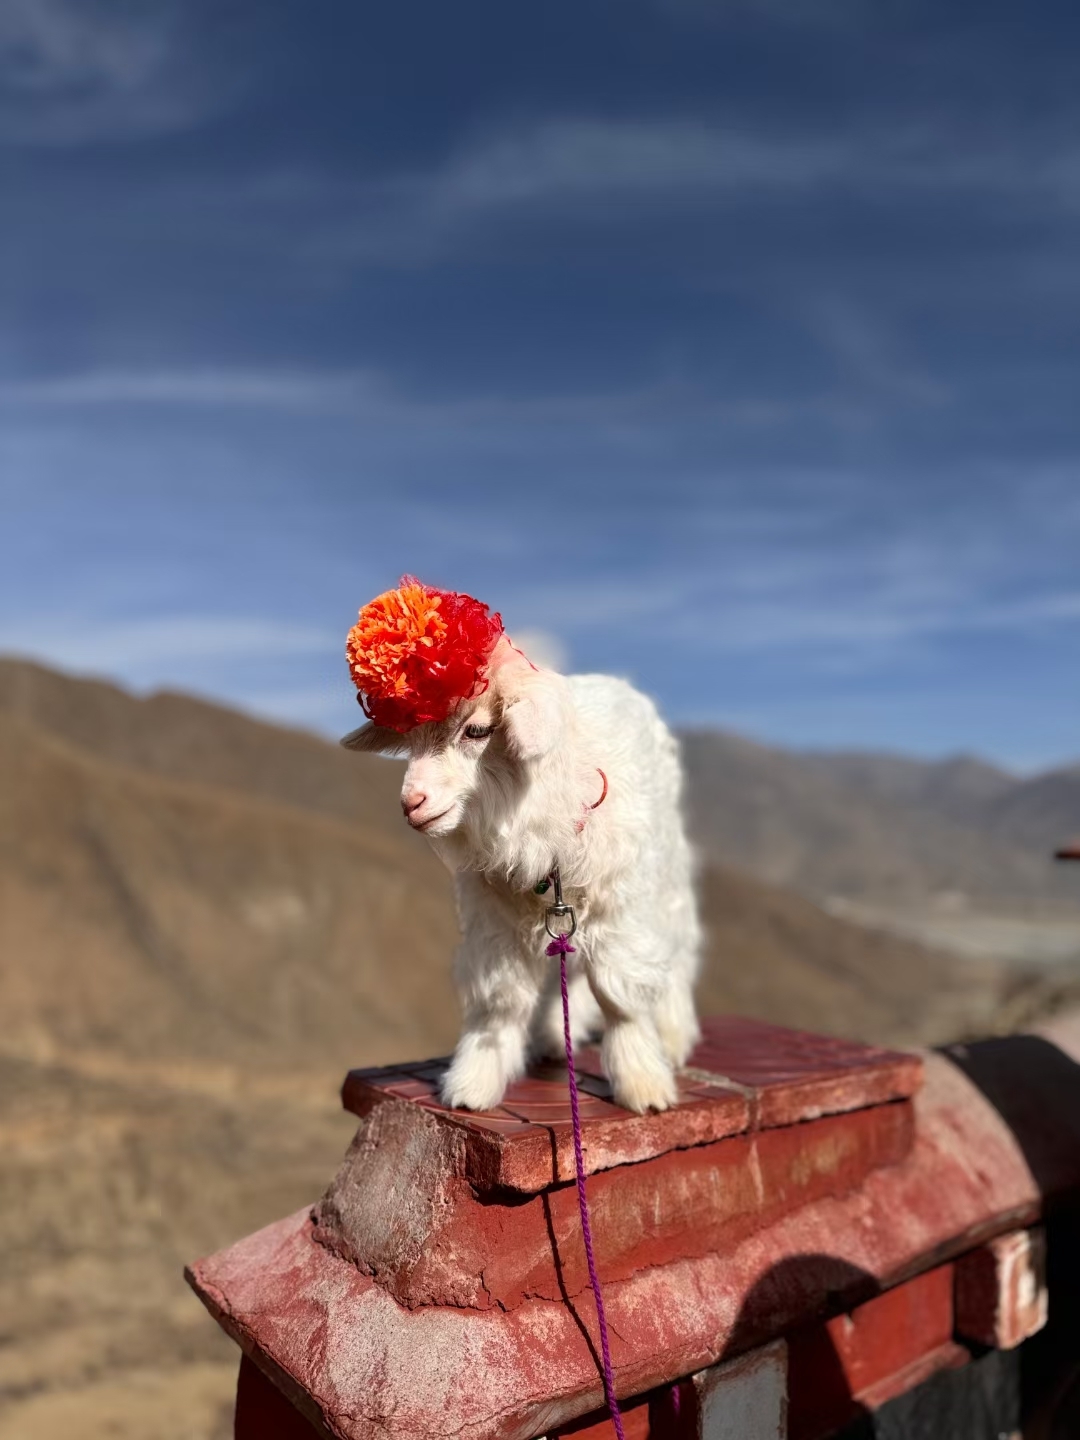 #一起去西藏西藏之旅第四站，羊湖。海拔4667米没有高反我把我骄傲坏了[Clap]，满眼碧水蓝天，不